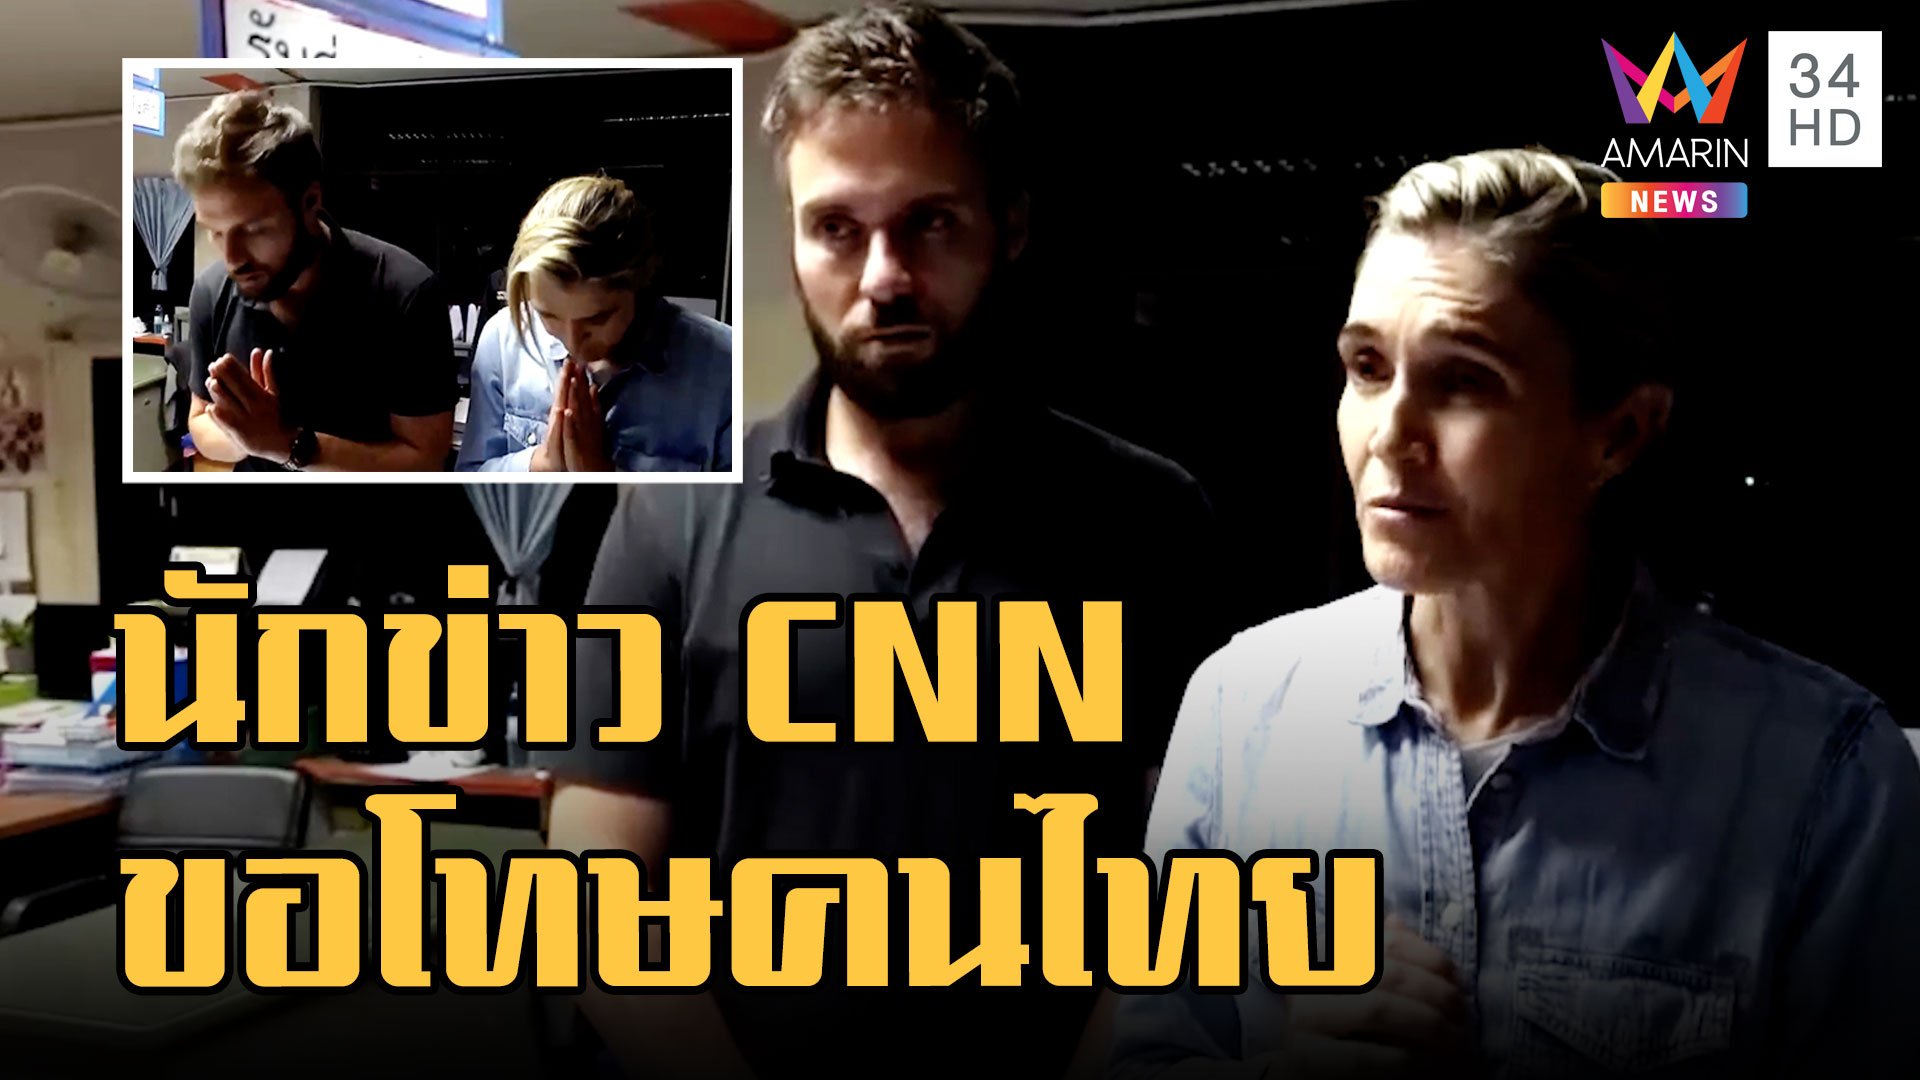 นักข่าว CNN ขอโทษคนไทย หลังบุกรายงานข่าวในศูนย์เด็กเล็กจุดเกิดเหตุ | ข่าวอรุณอมรินทร์ | 10 ต.ค. 65 | AMARIN TVHD34